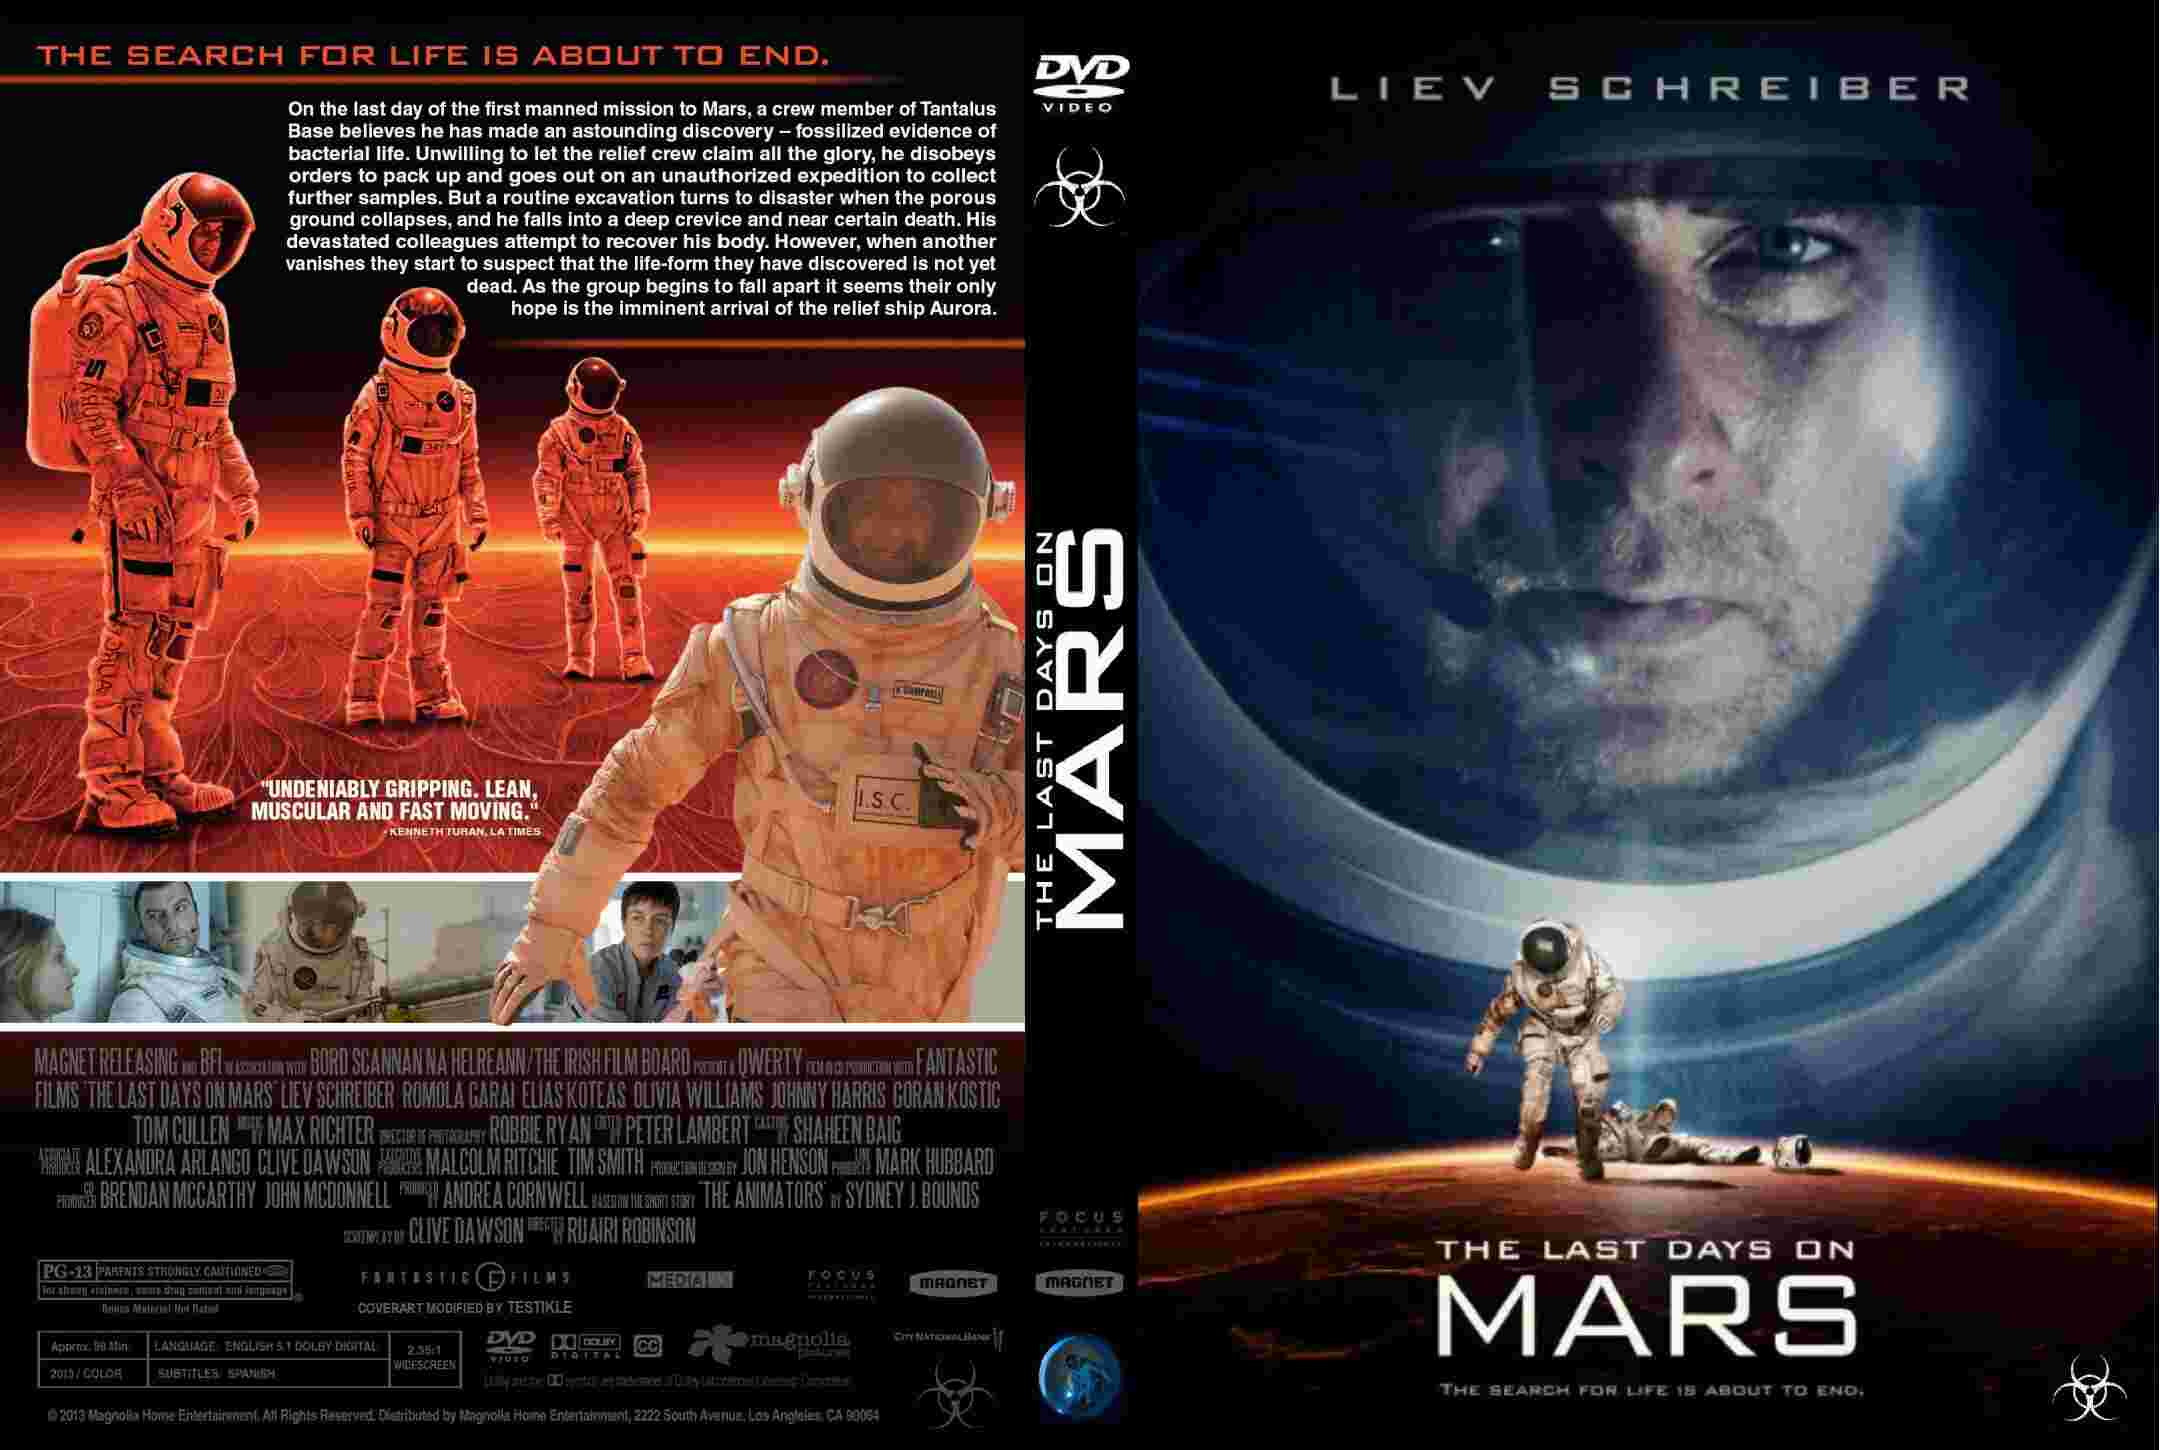 The Last Days On Mars #6